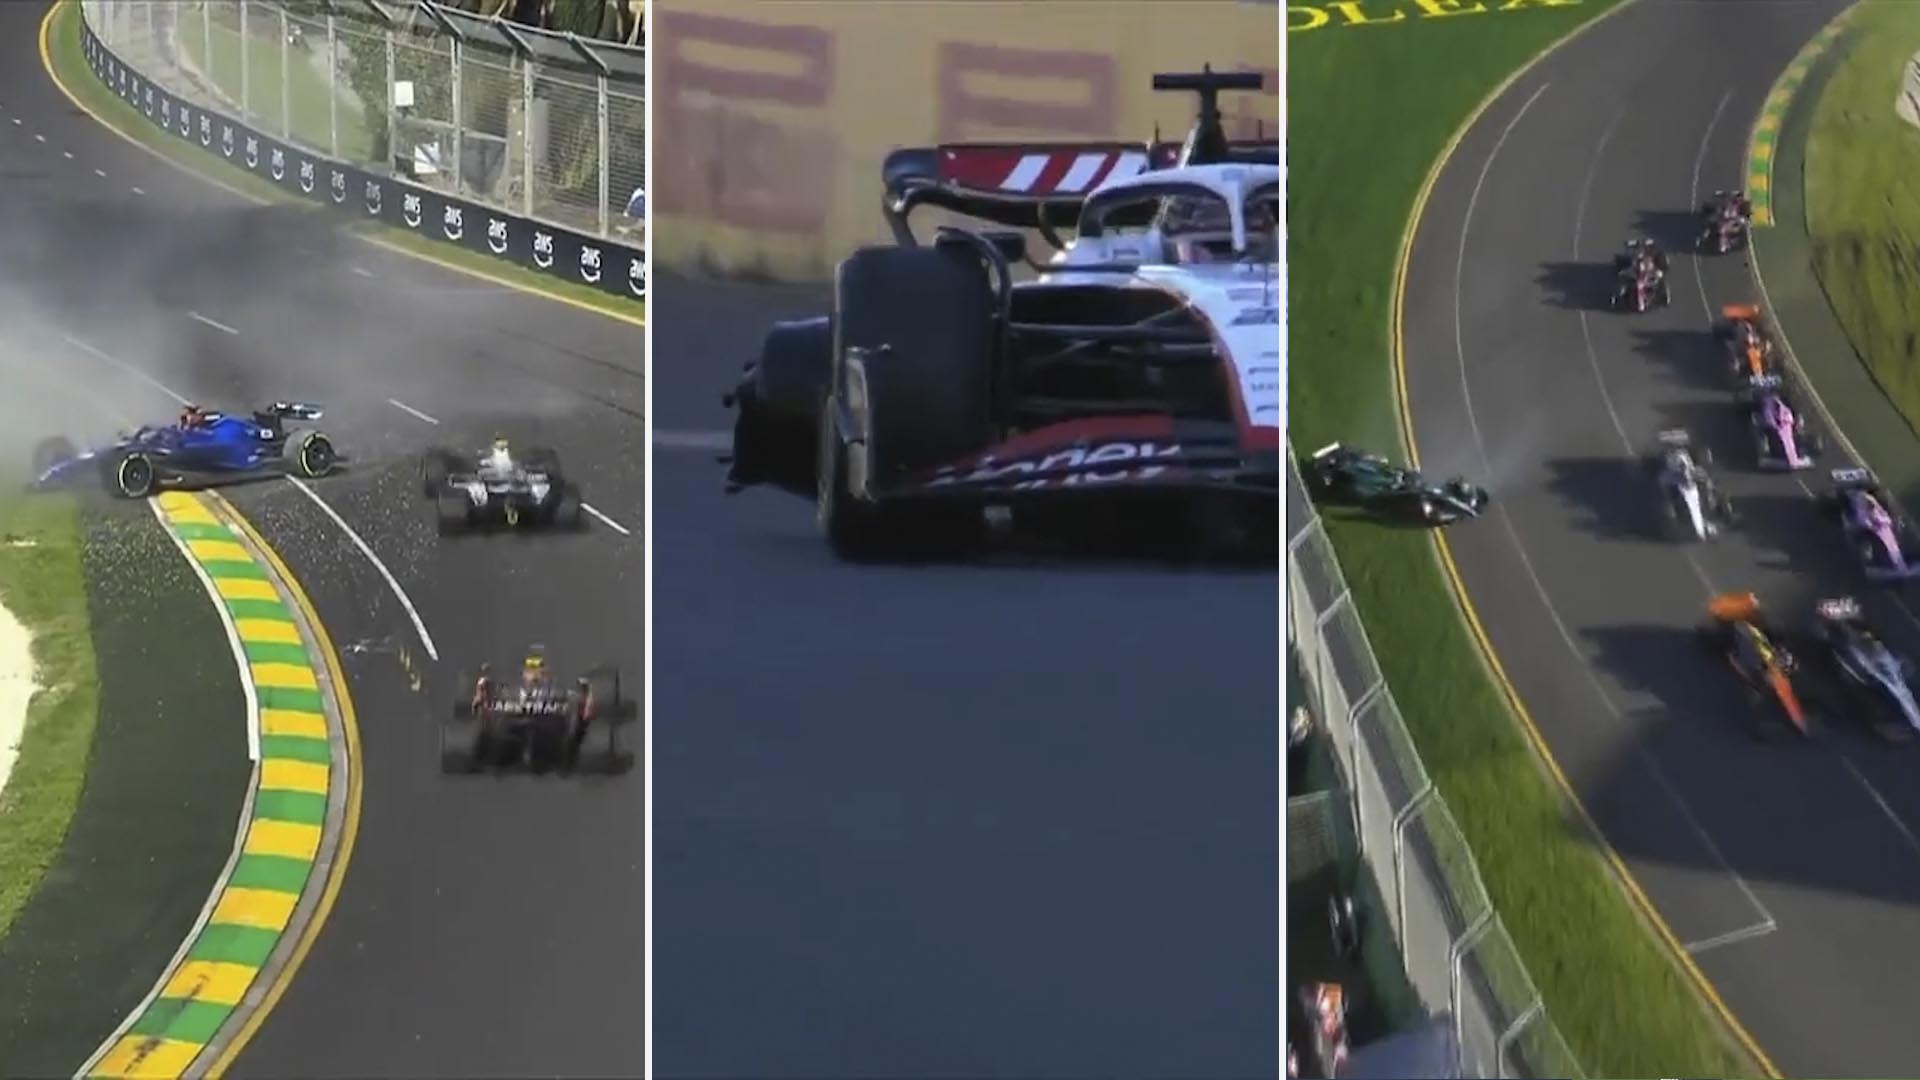 Tres banderas rojas y varios incidentes que generaron polémica: Verstappen ganó un frenético GP de Australia en la Fórmula 1